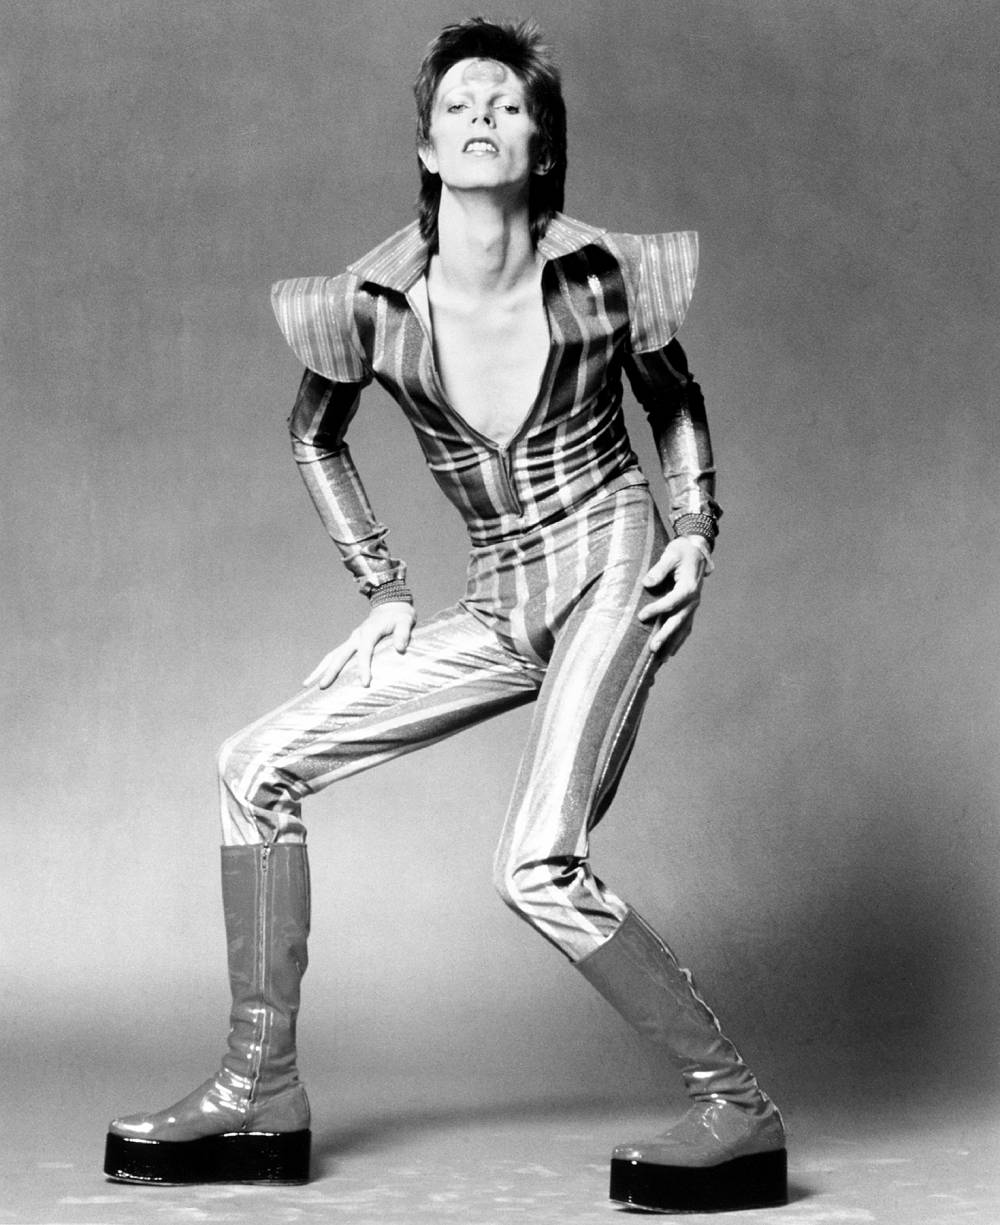 David Bowie as Ziggy Stardust in 1972